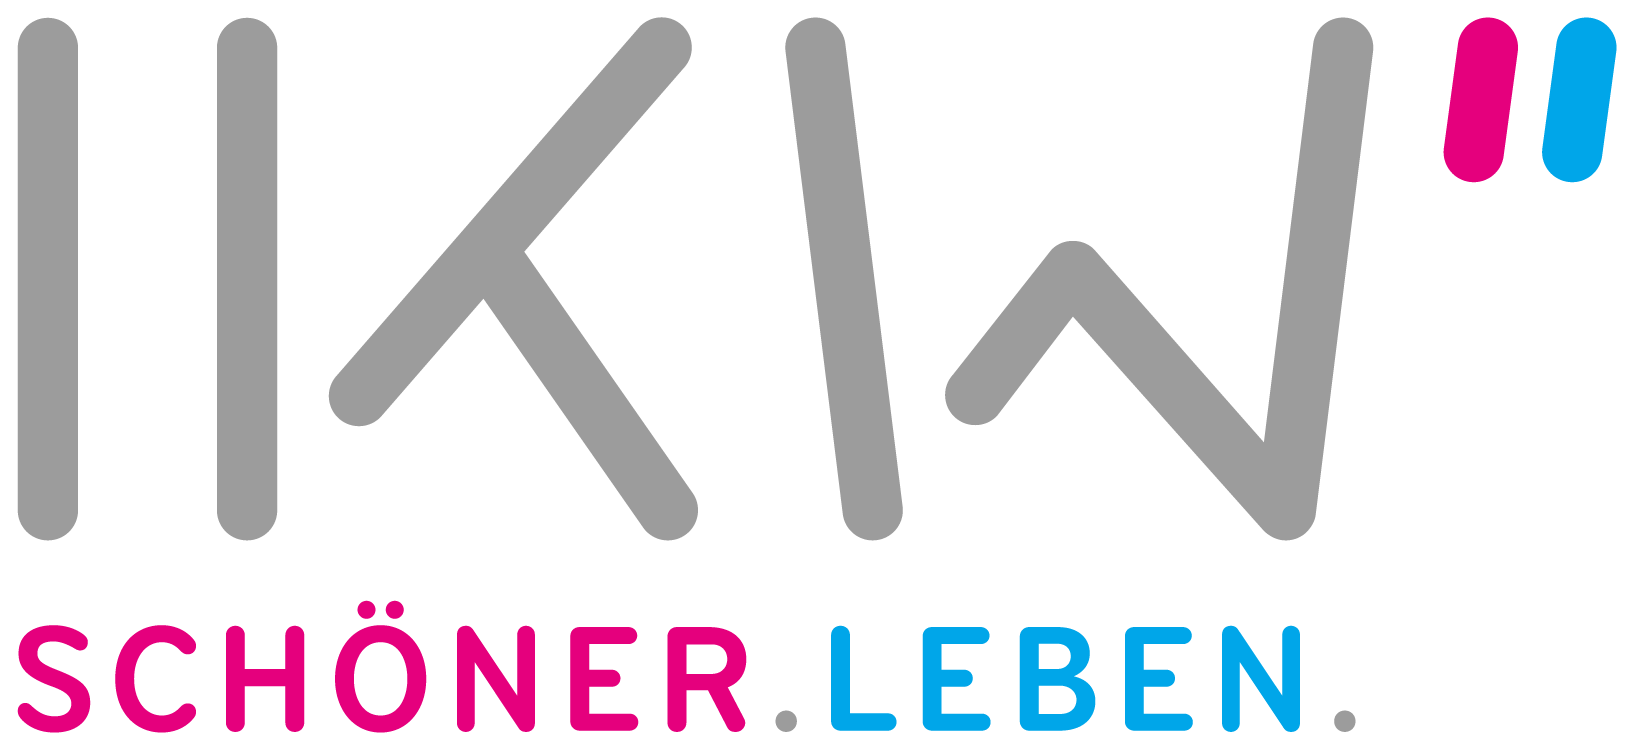 IKW-Logo-Claim_RGB